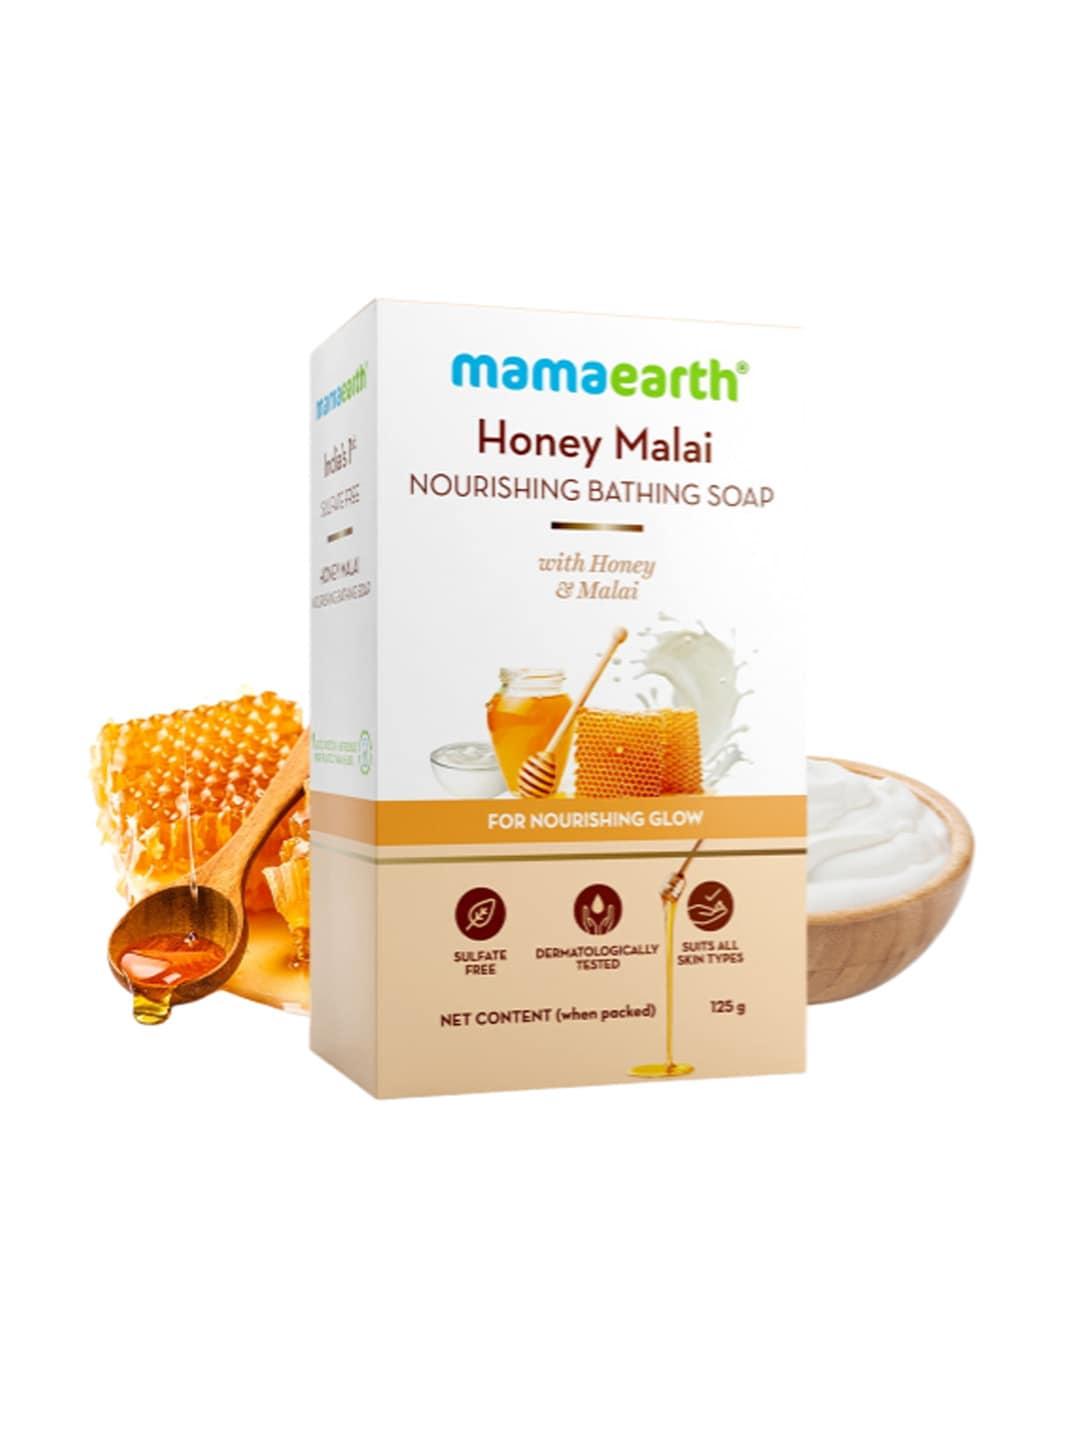 mamaearth honey malai nourishing bathing soap for nourishing glow - 125 g